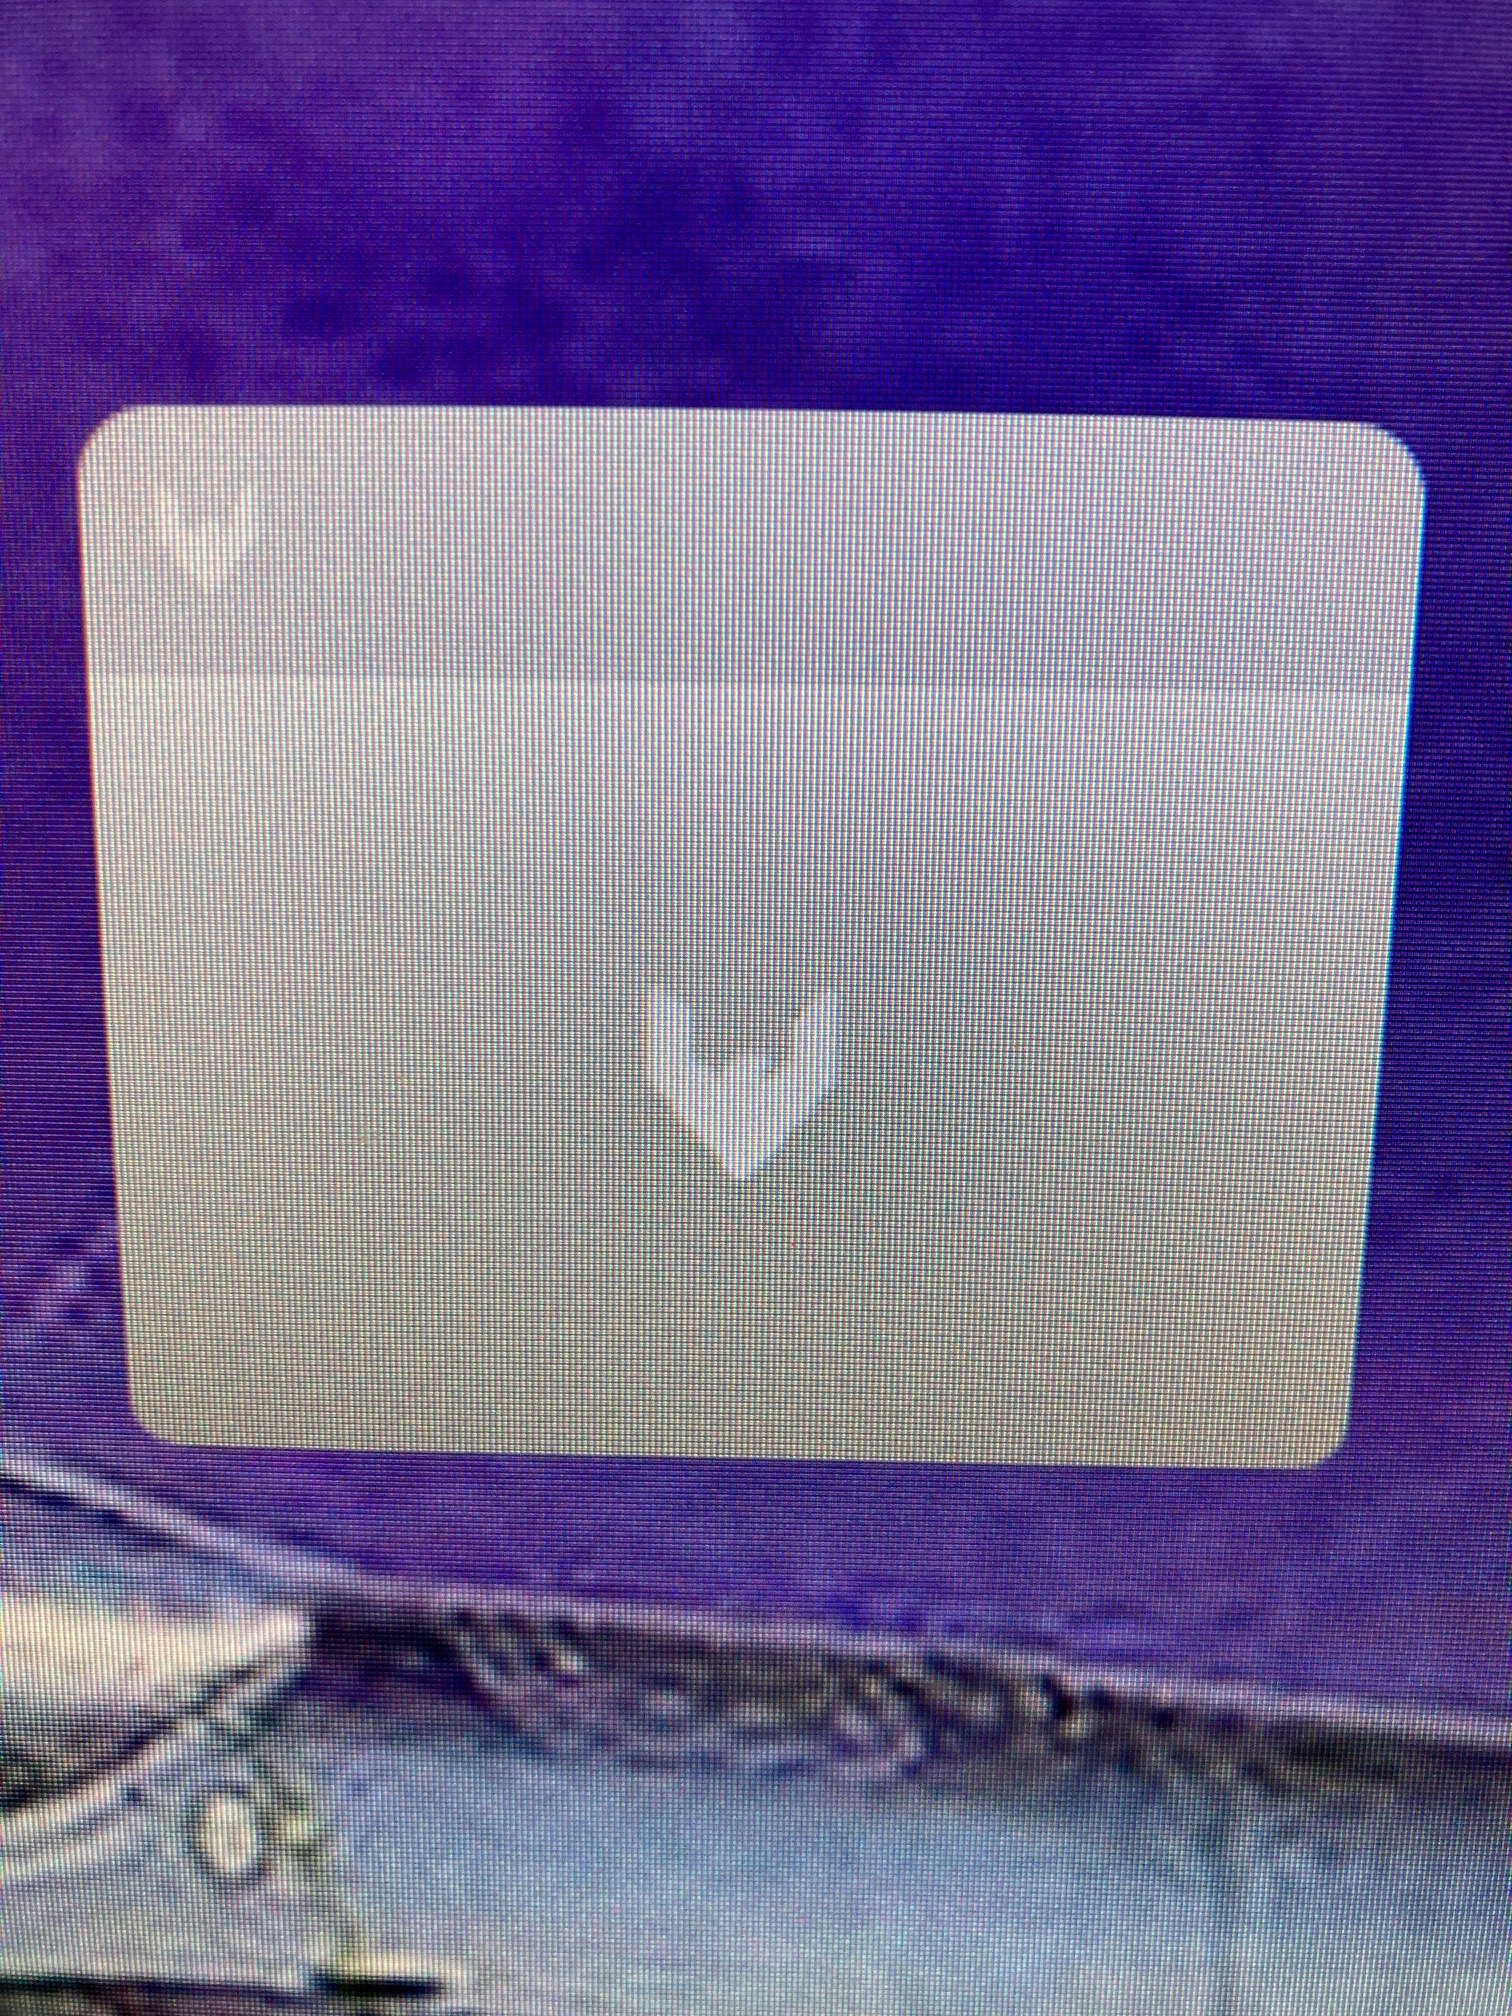 Seltsames Symbol in der Taskleiste - Rechner läuft nicht mehr...